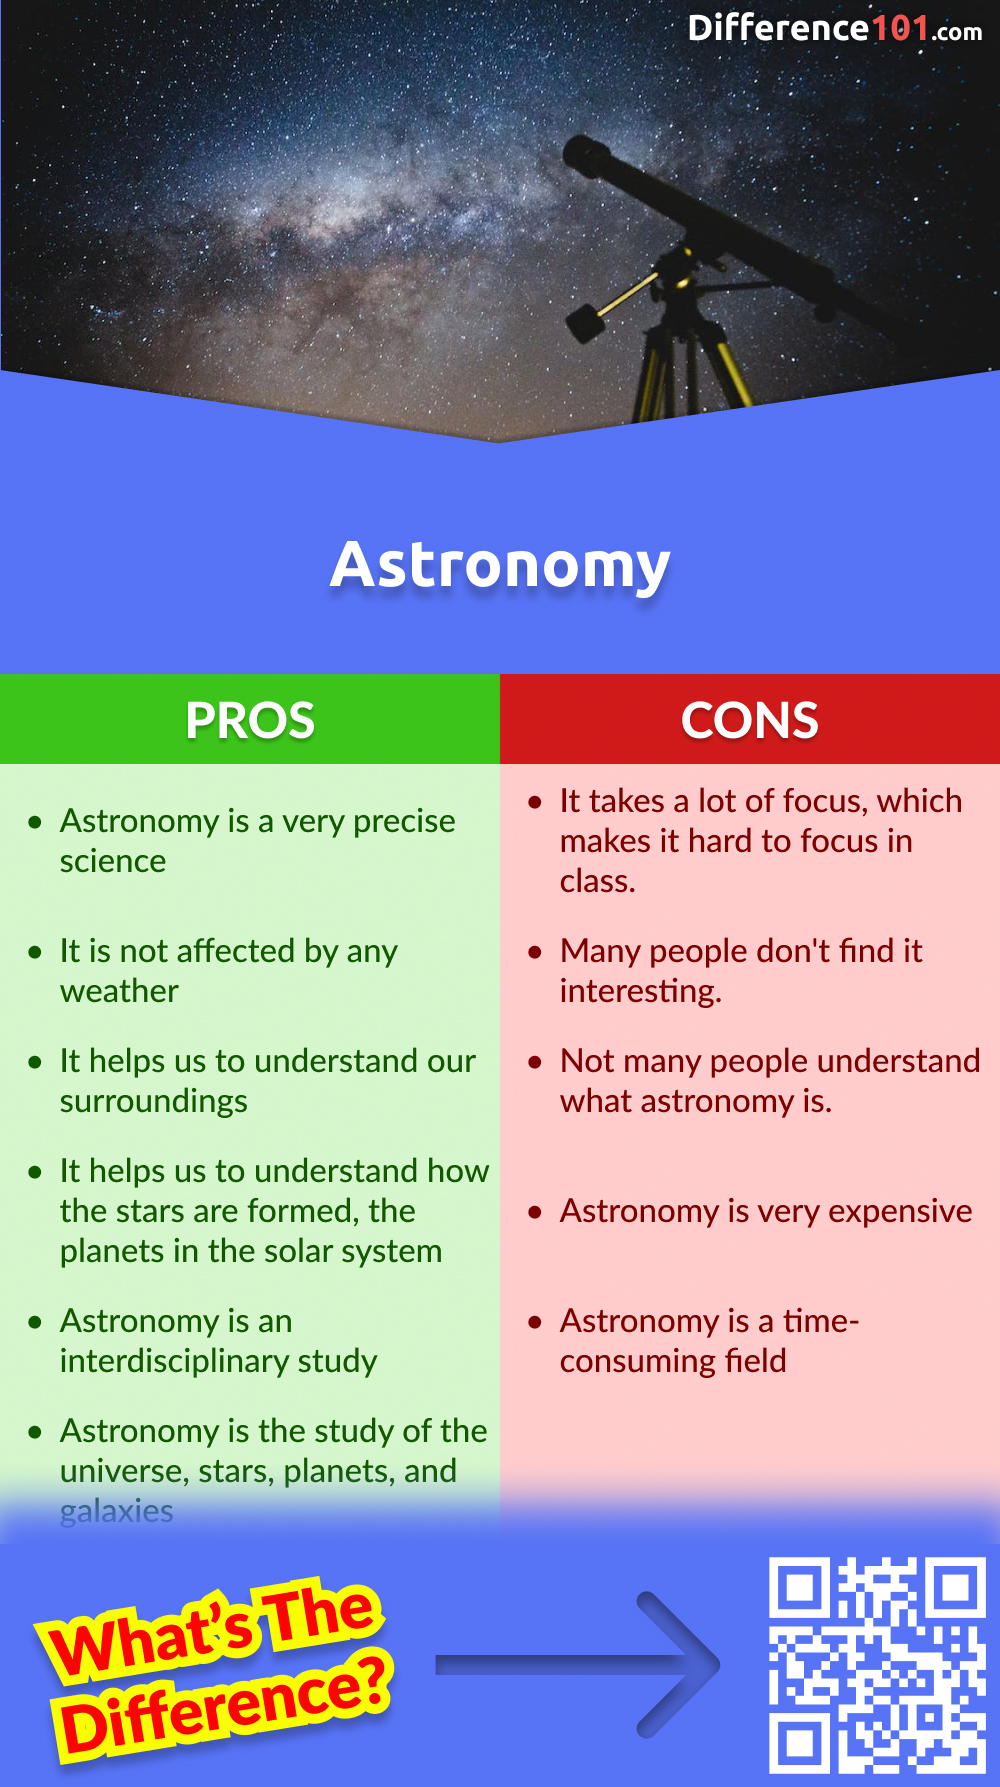 Astronomia Prós e Contras